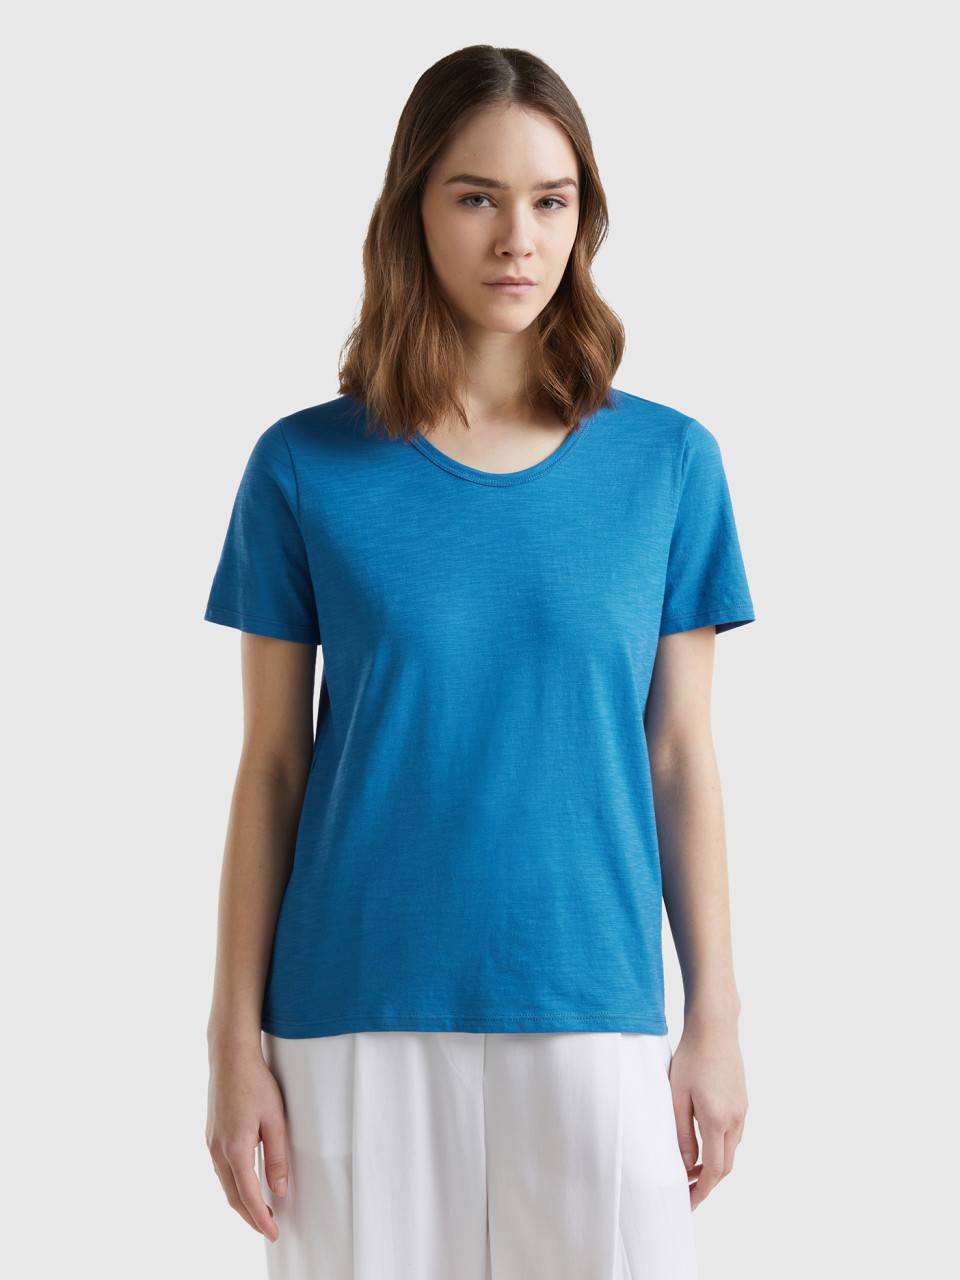 Benetton, Short Sleeve T-shirt Lightweight Cotton, Blue, Women